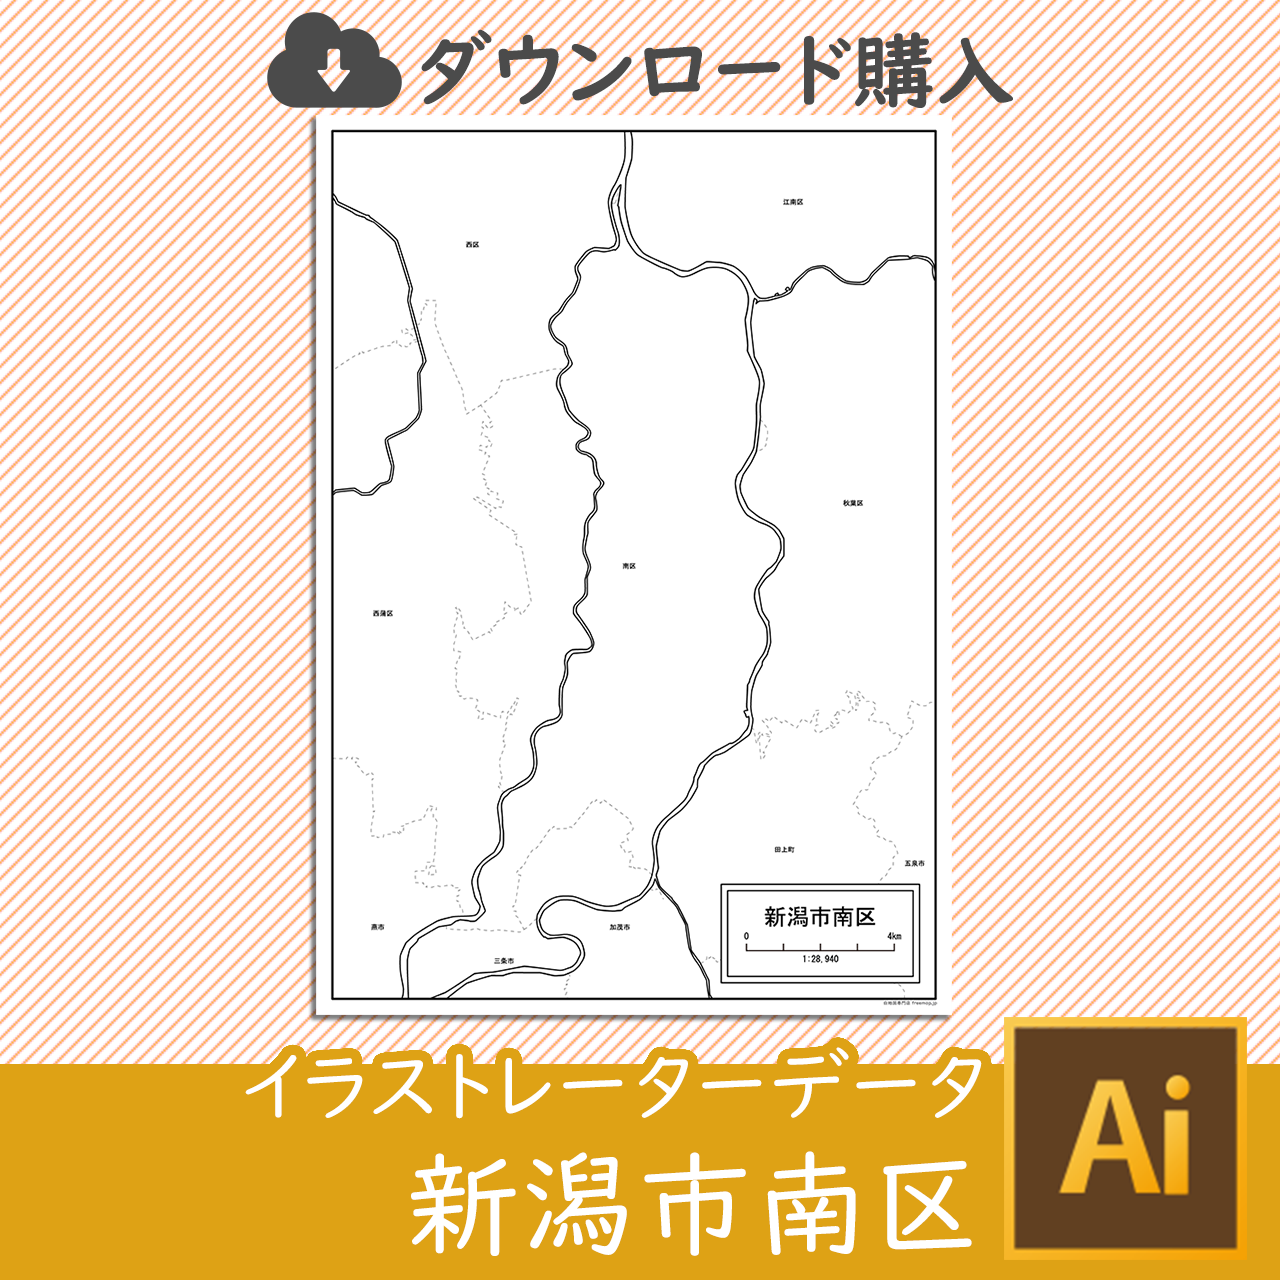 新潟市南区のaiデータのサムネイル画像